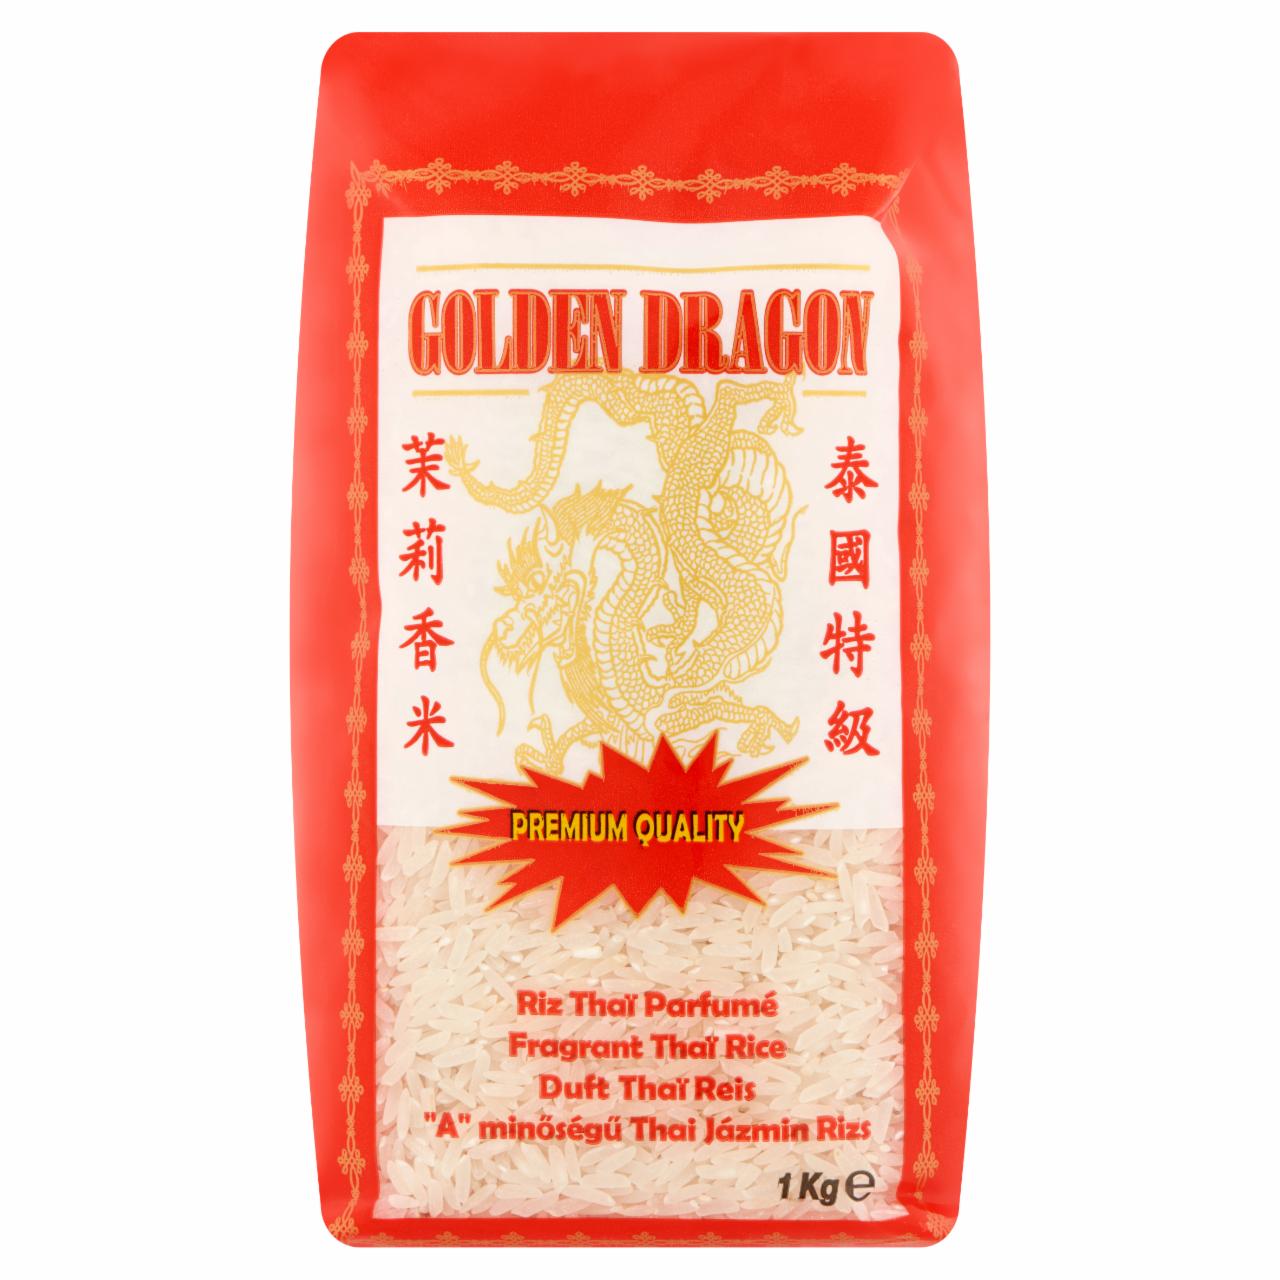 Képek - Golden Dragon 'A' minőségű thai jázmin rizs 1 kg